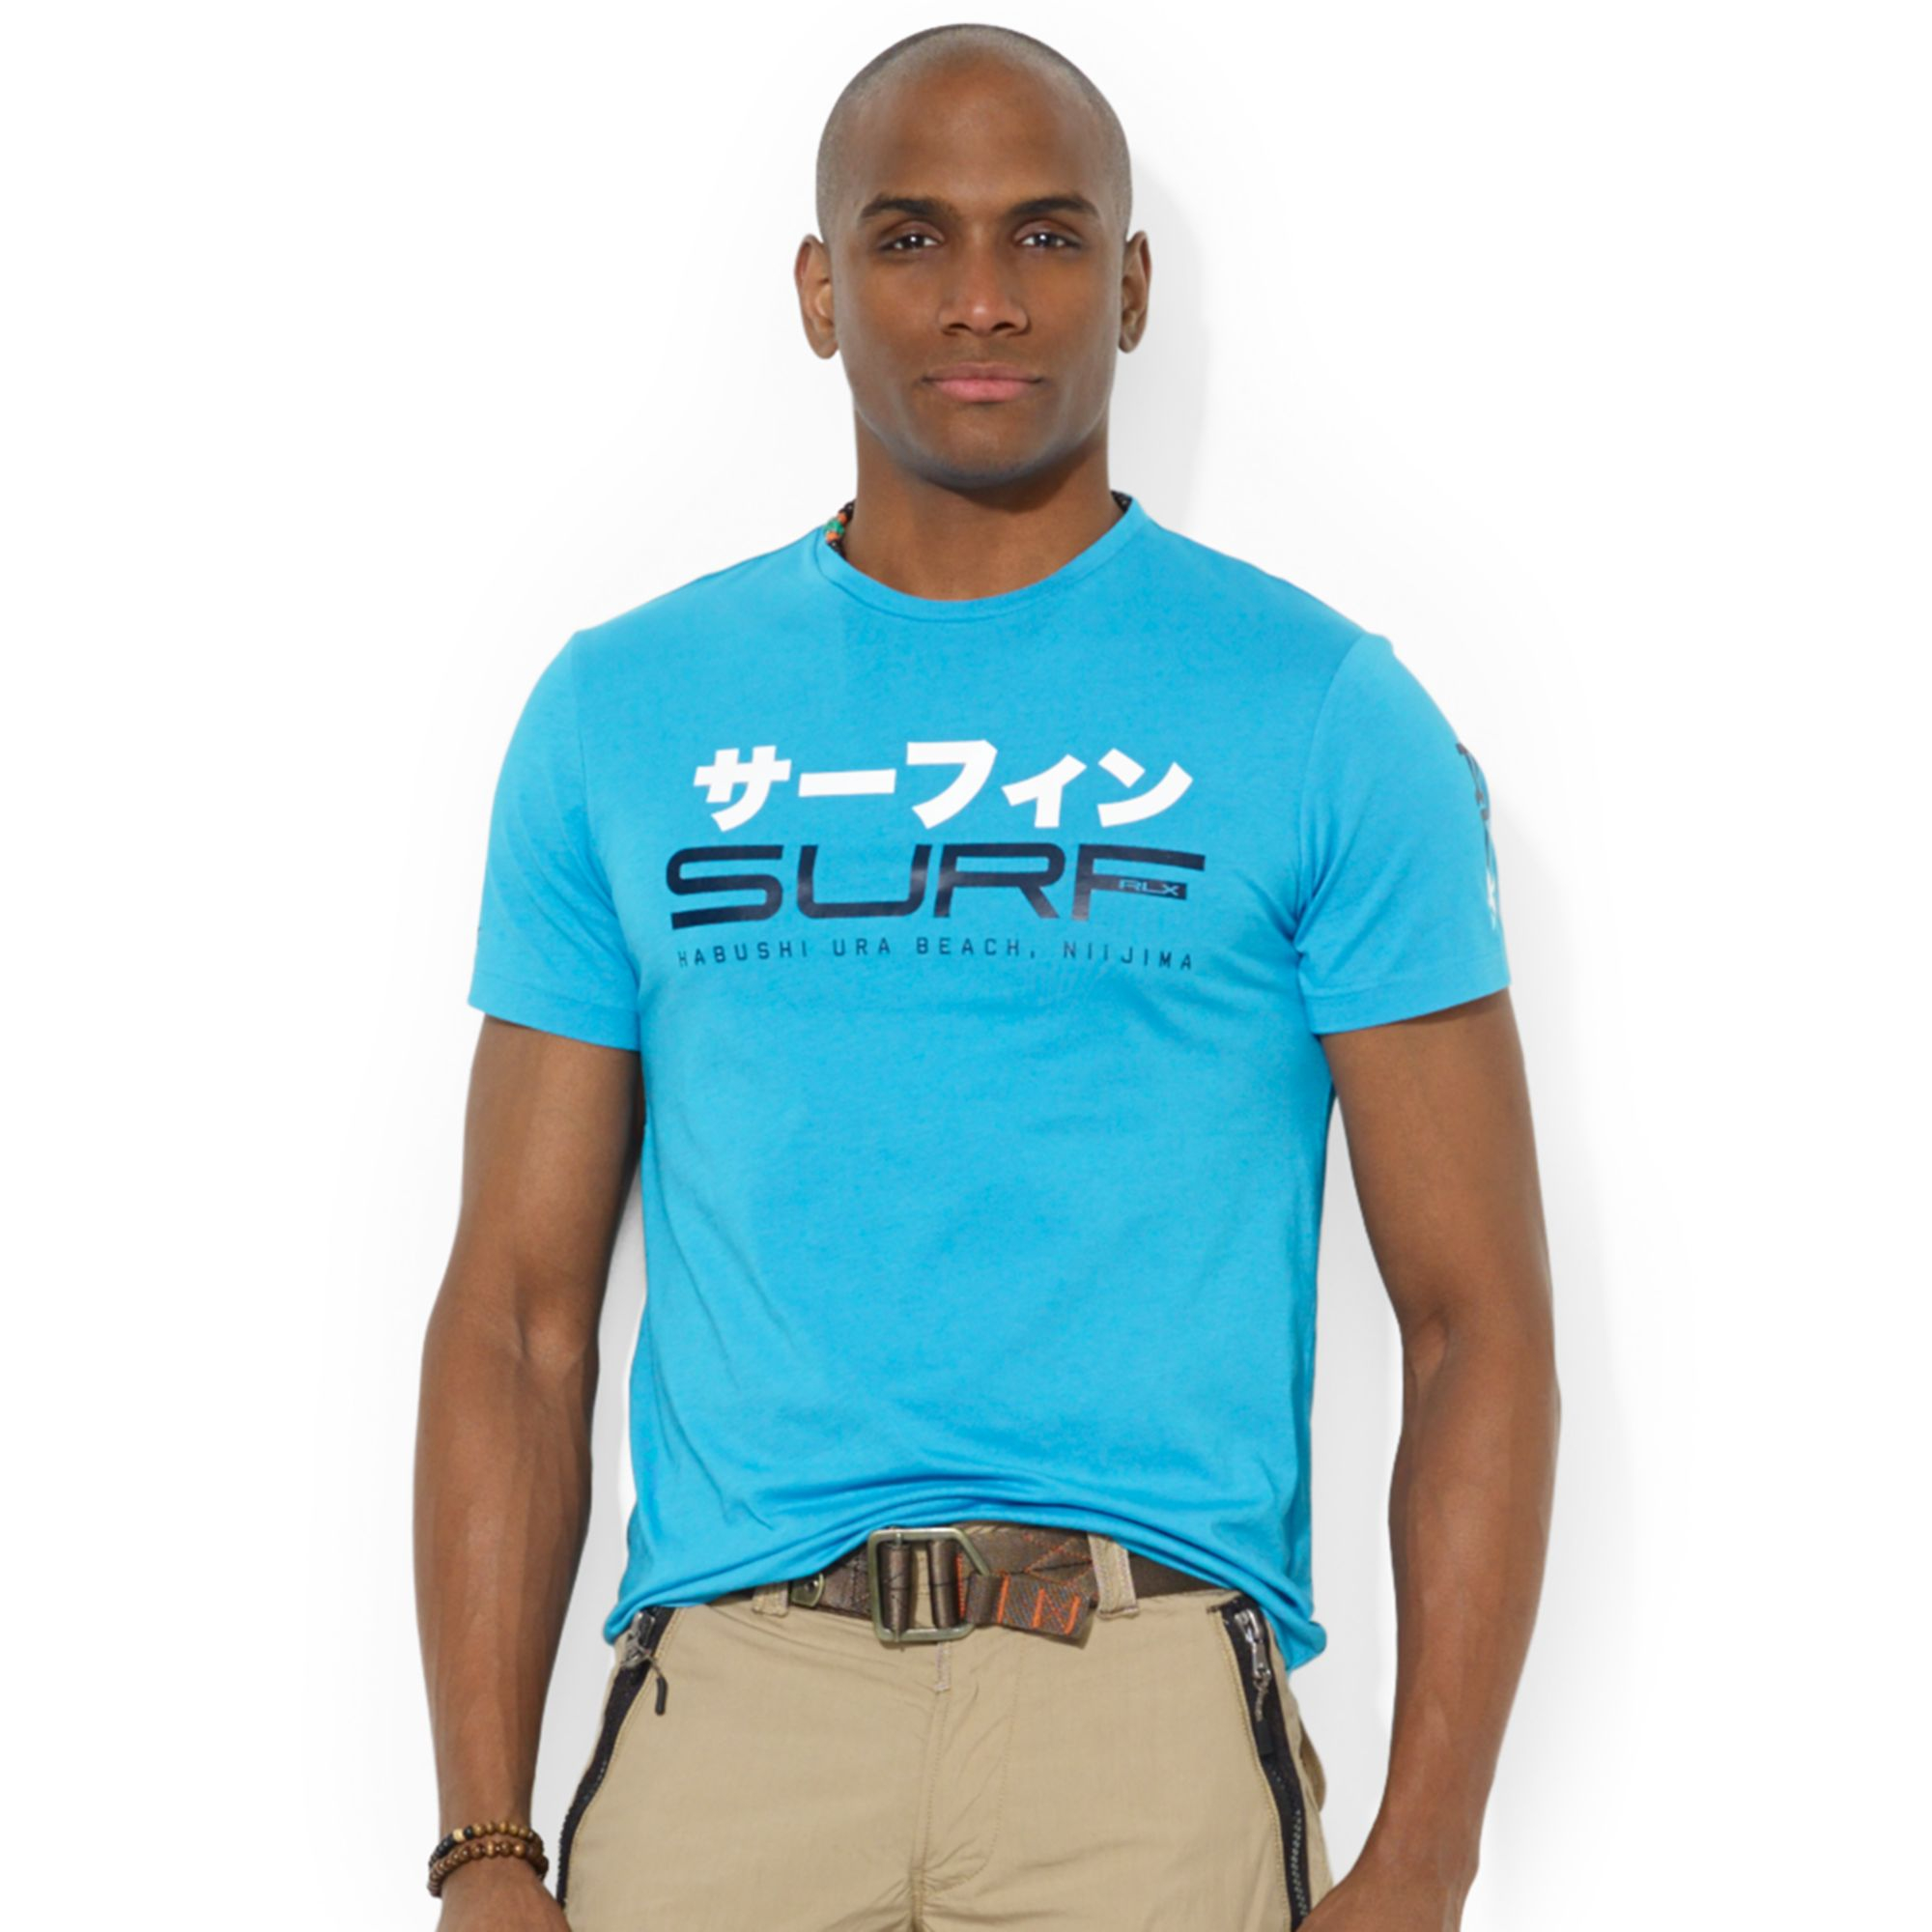 Usa online polo ralph lauren hawaiian surf t shirt for